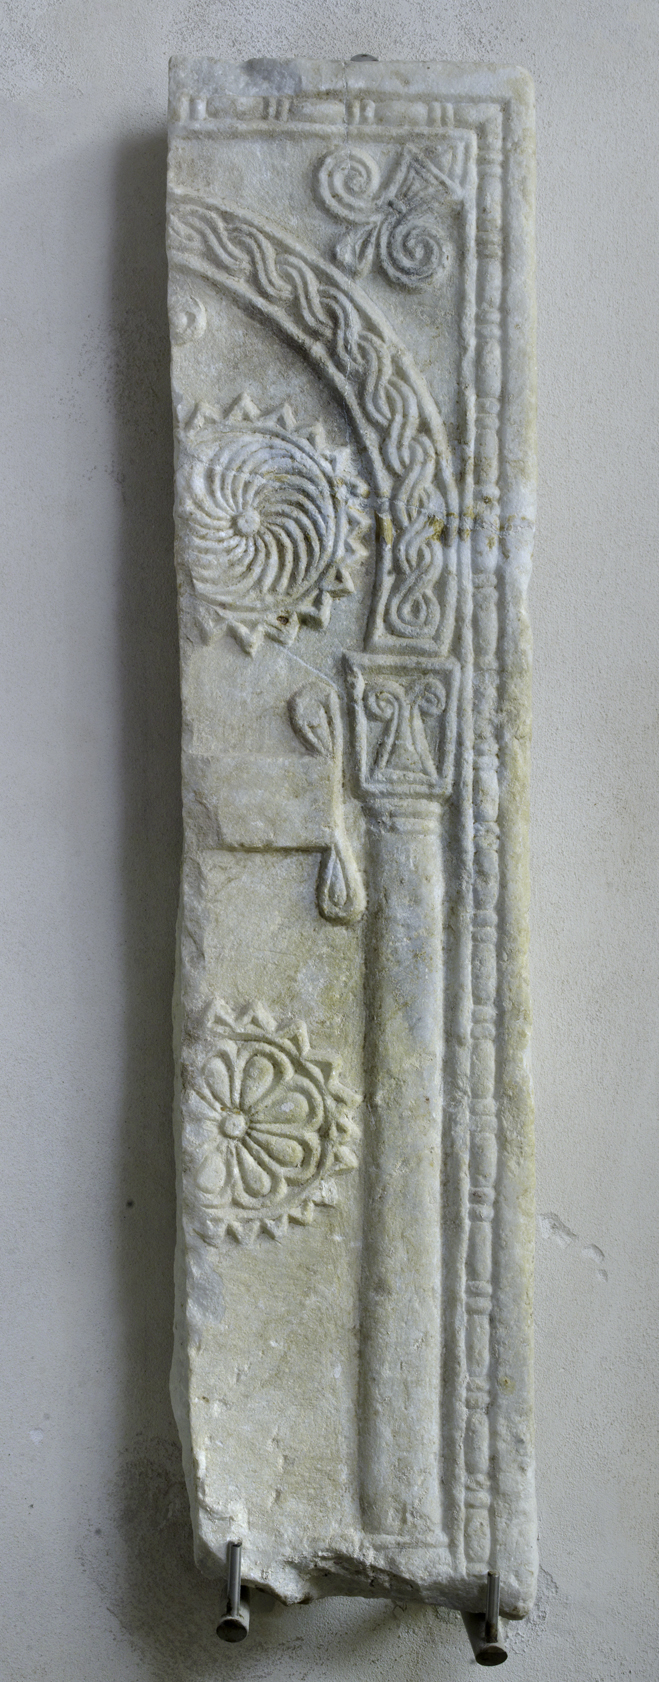 motivi decorativi architettonici e vegetali stilizzati (pluteo, frammento) di Ignoto (attribuito) - manifattura bizantina (IX)